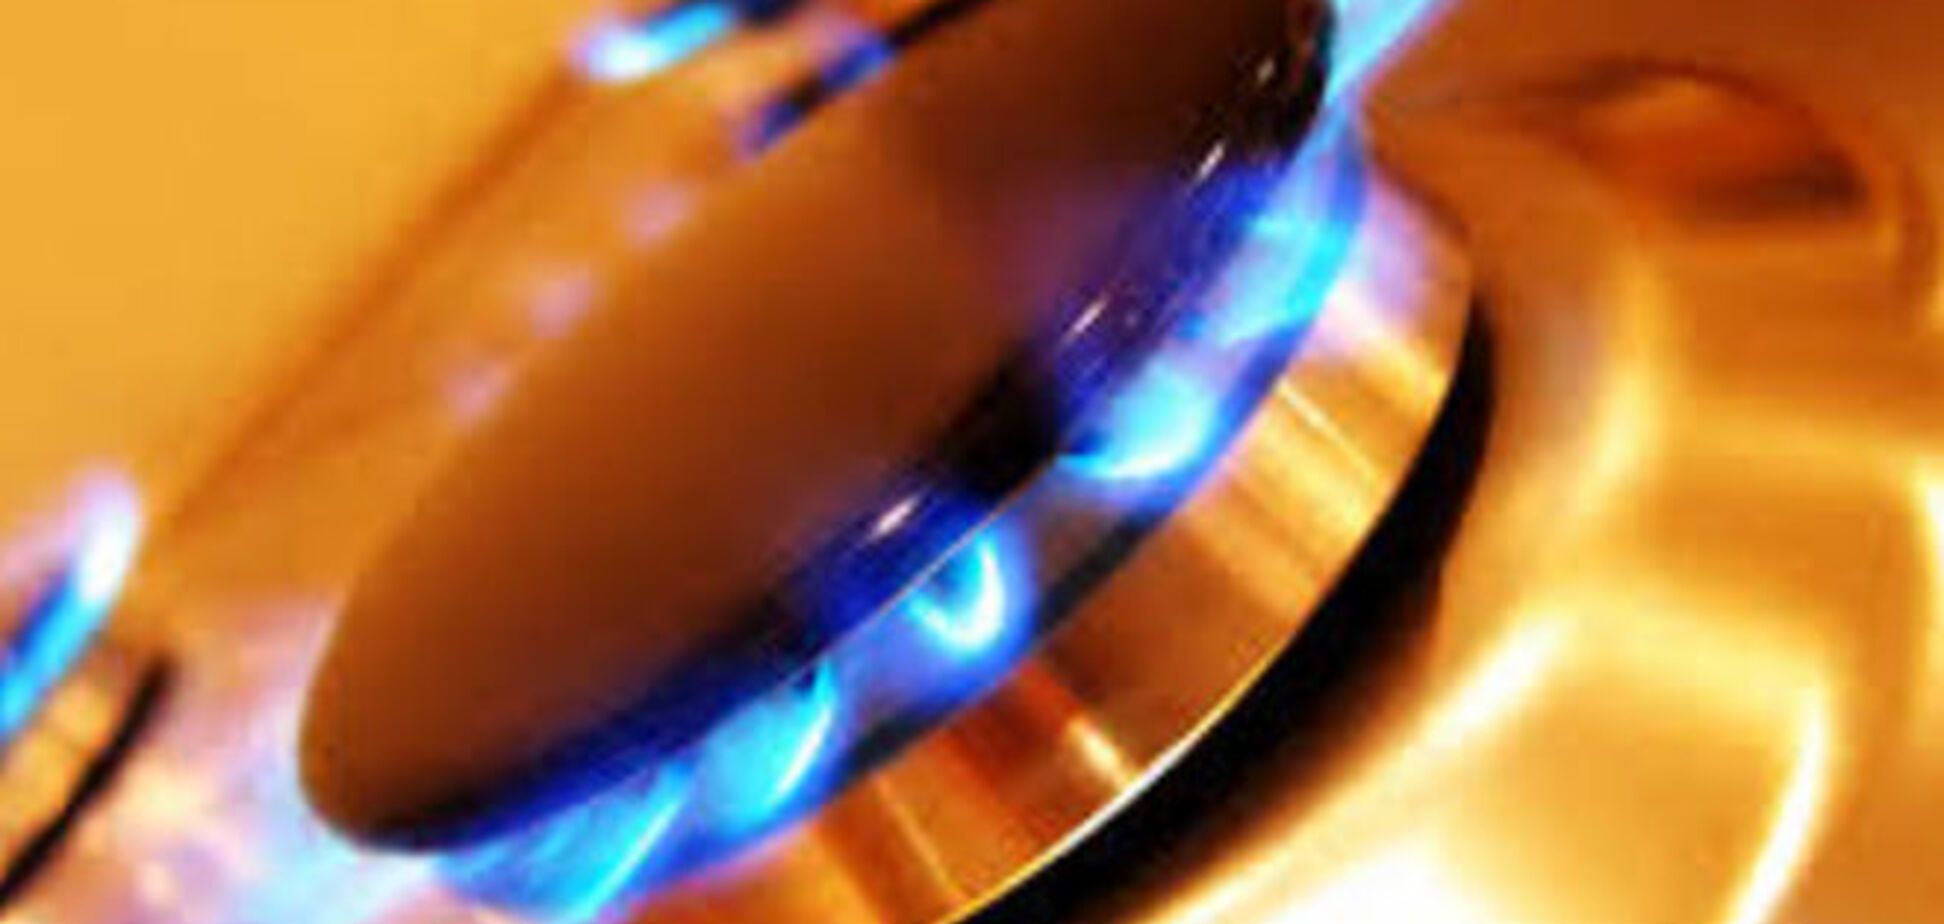 Украина перестанет покупать газ у России с 1 апреля - Демчишин